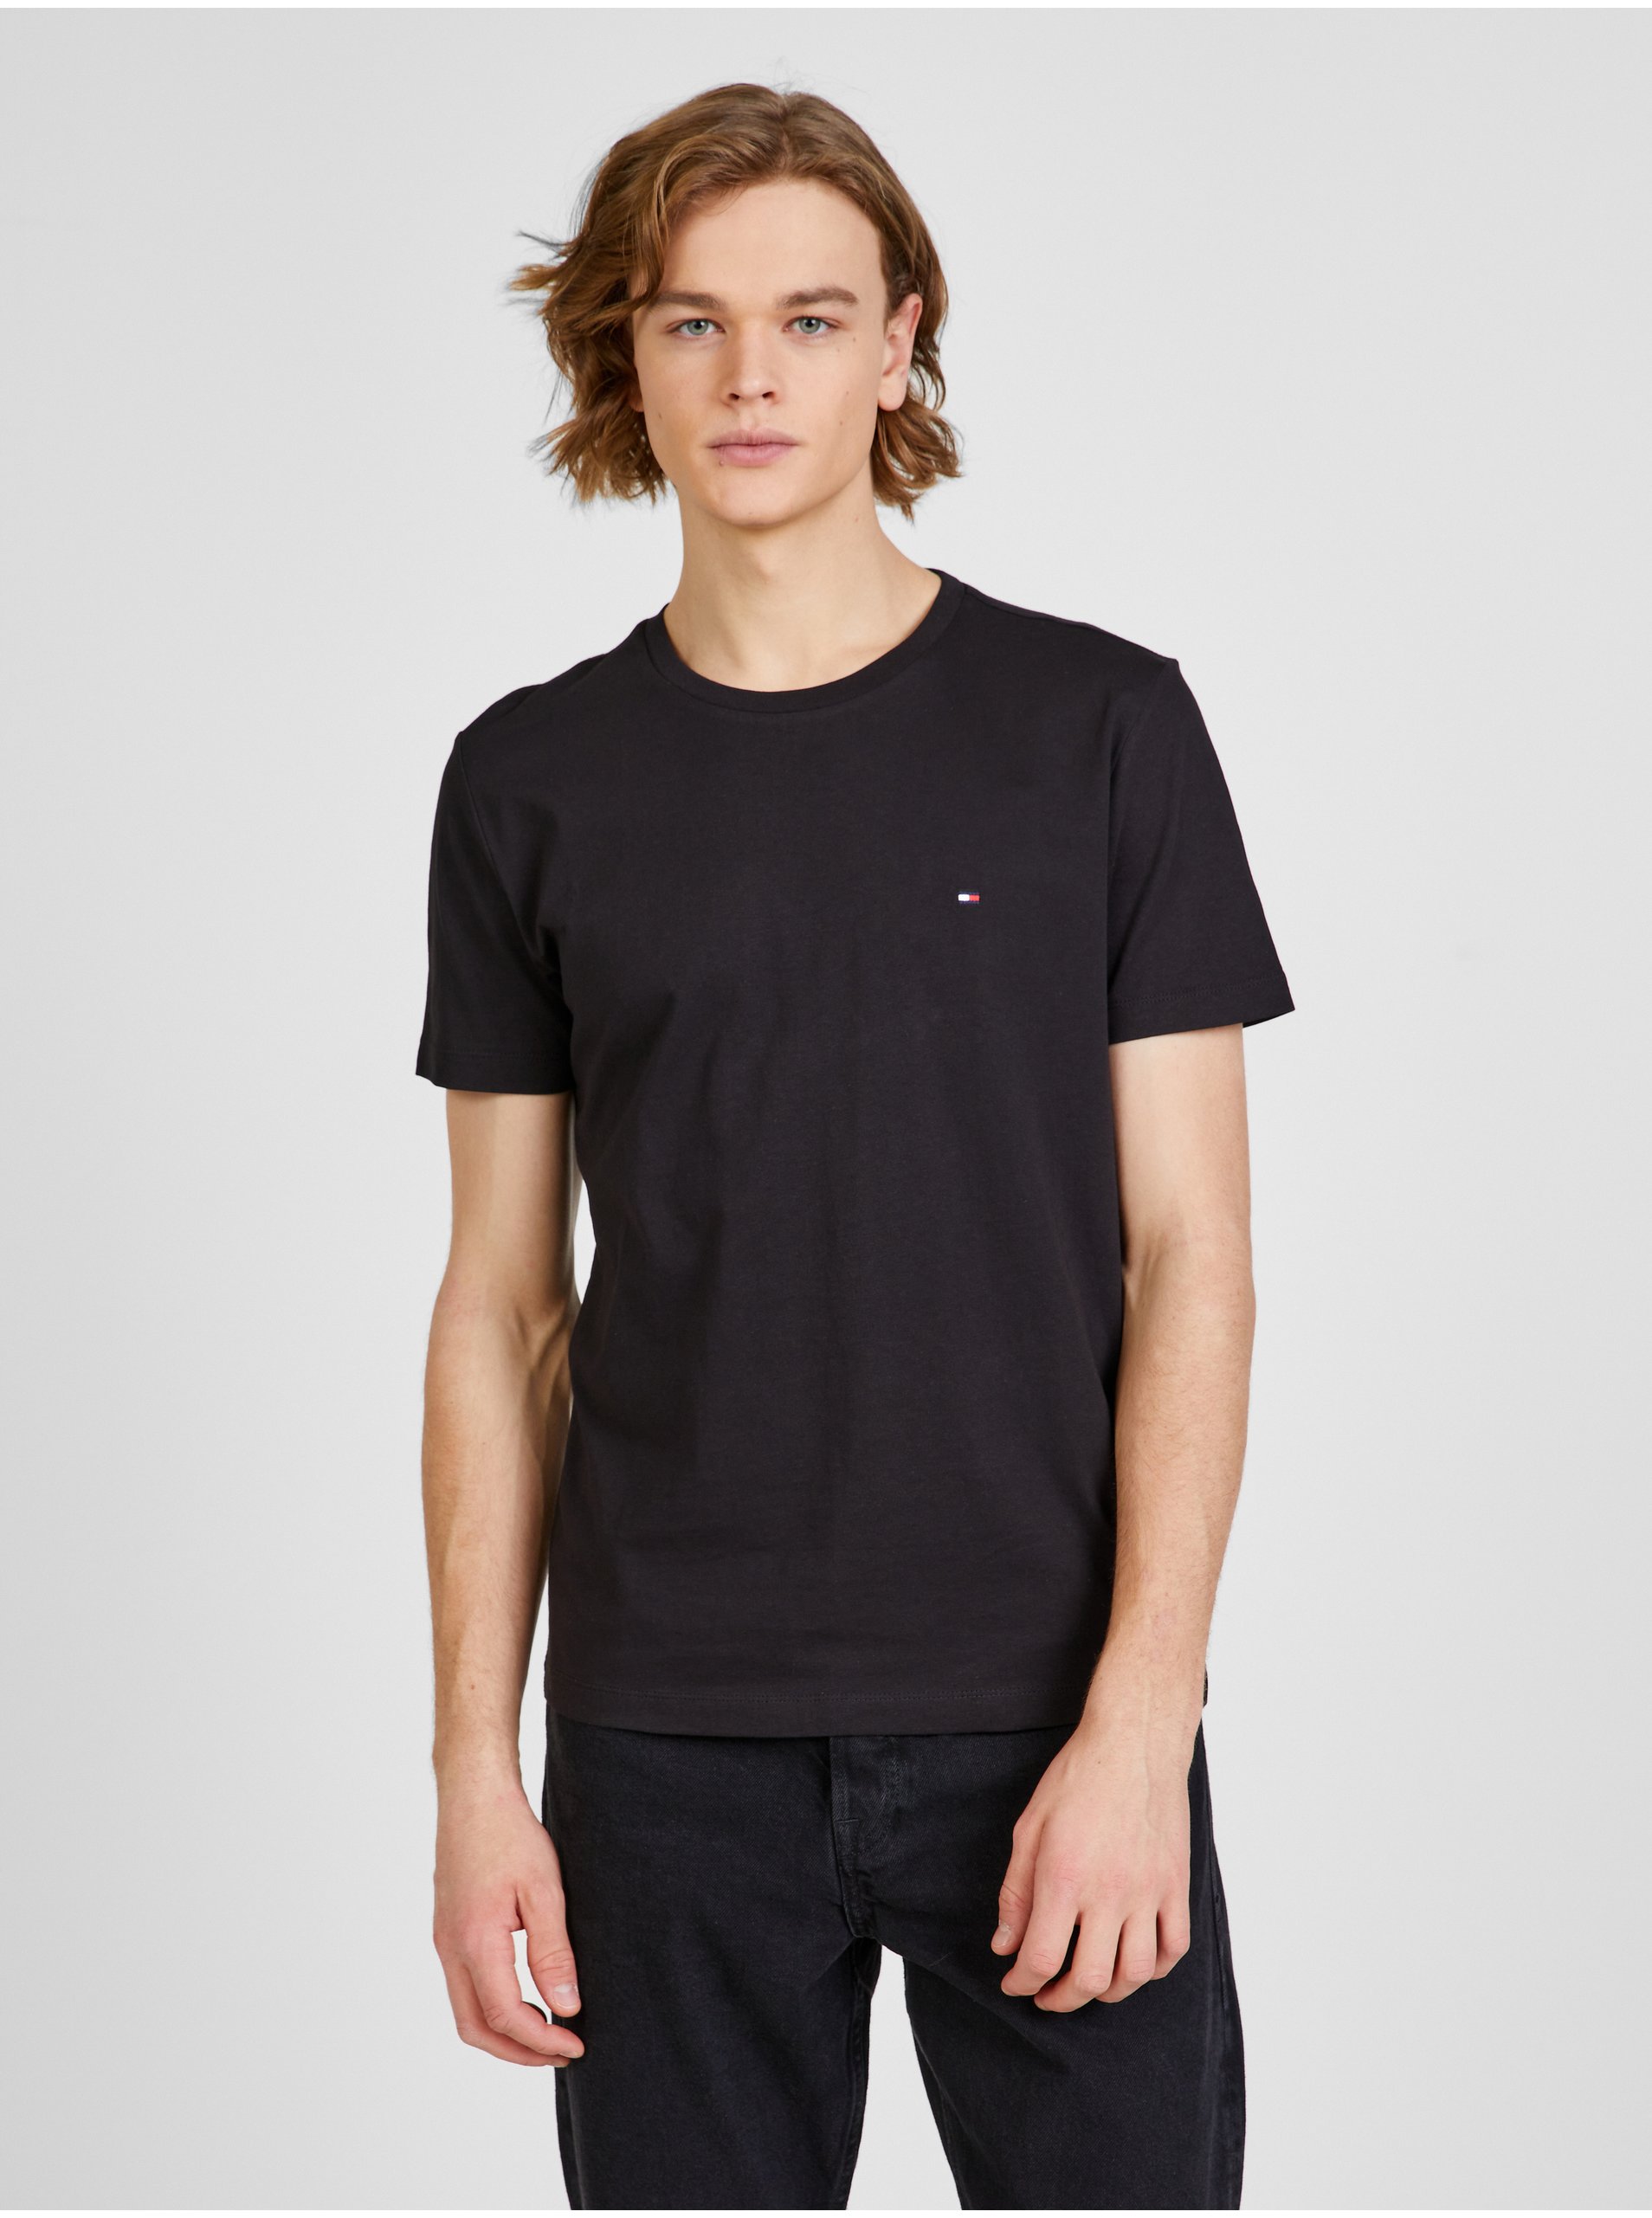 Lacno Čierne pánske tričko s potlačou Tommy Hilfiger